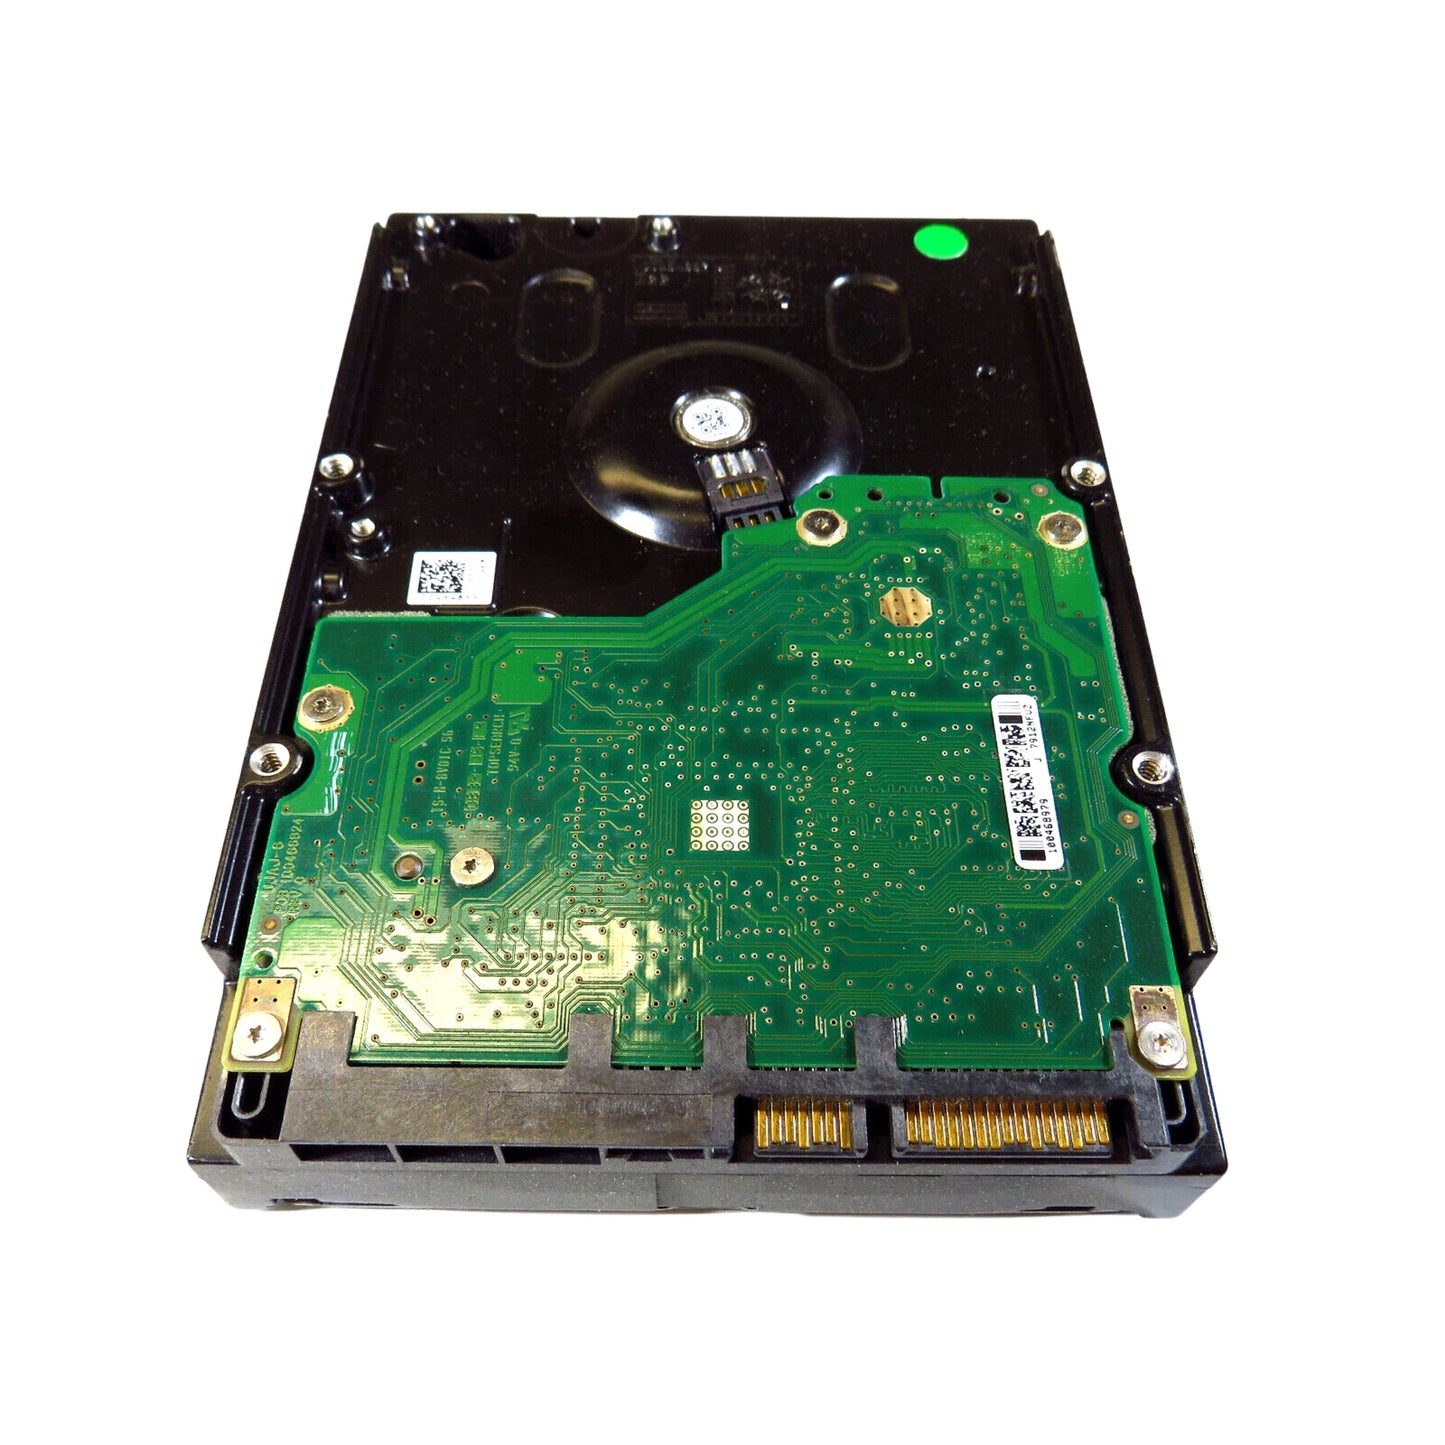 Dell NN987 3.5" 750GB 7200RPM SATA II Hard Disk Drive (HDD), Silver (Refurbished)